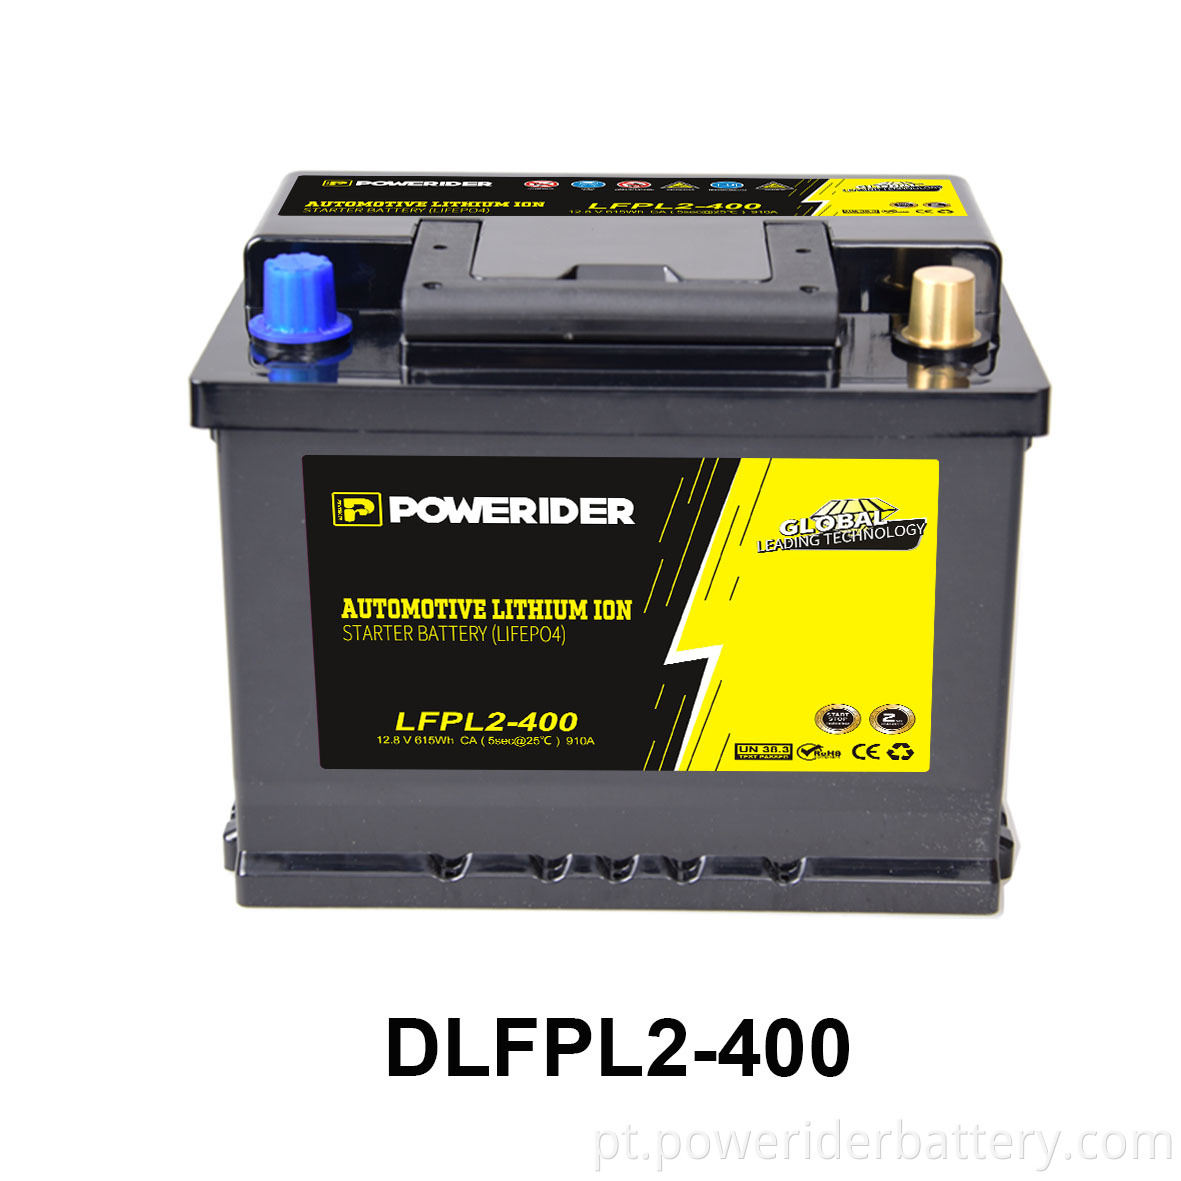 DLFPL2-400